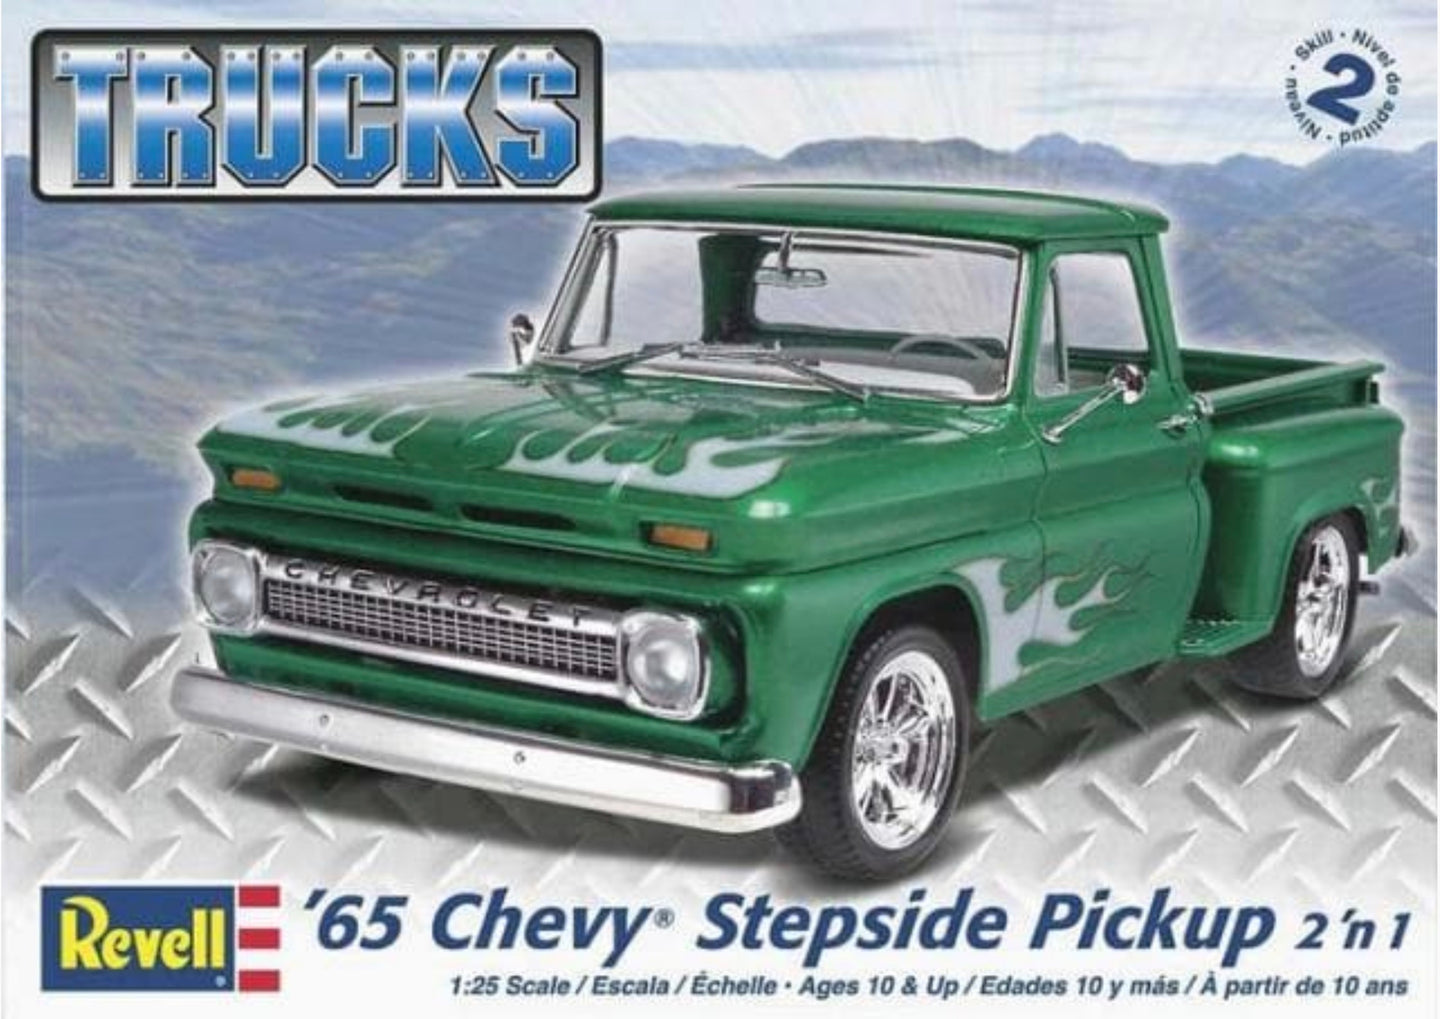 Revell 1/25 Chevy Stepside Pickup 1965 2 'n 1 857210